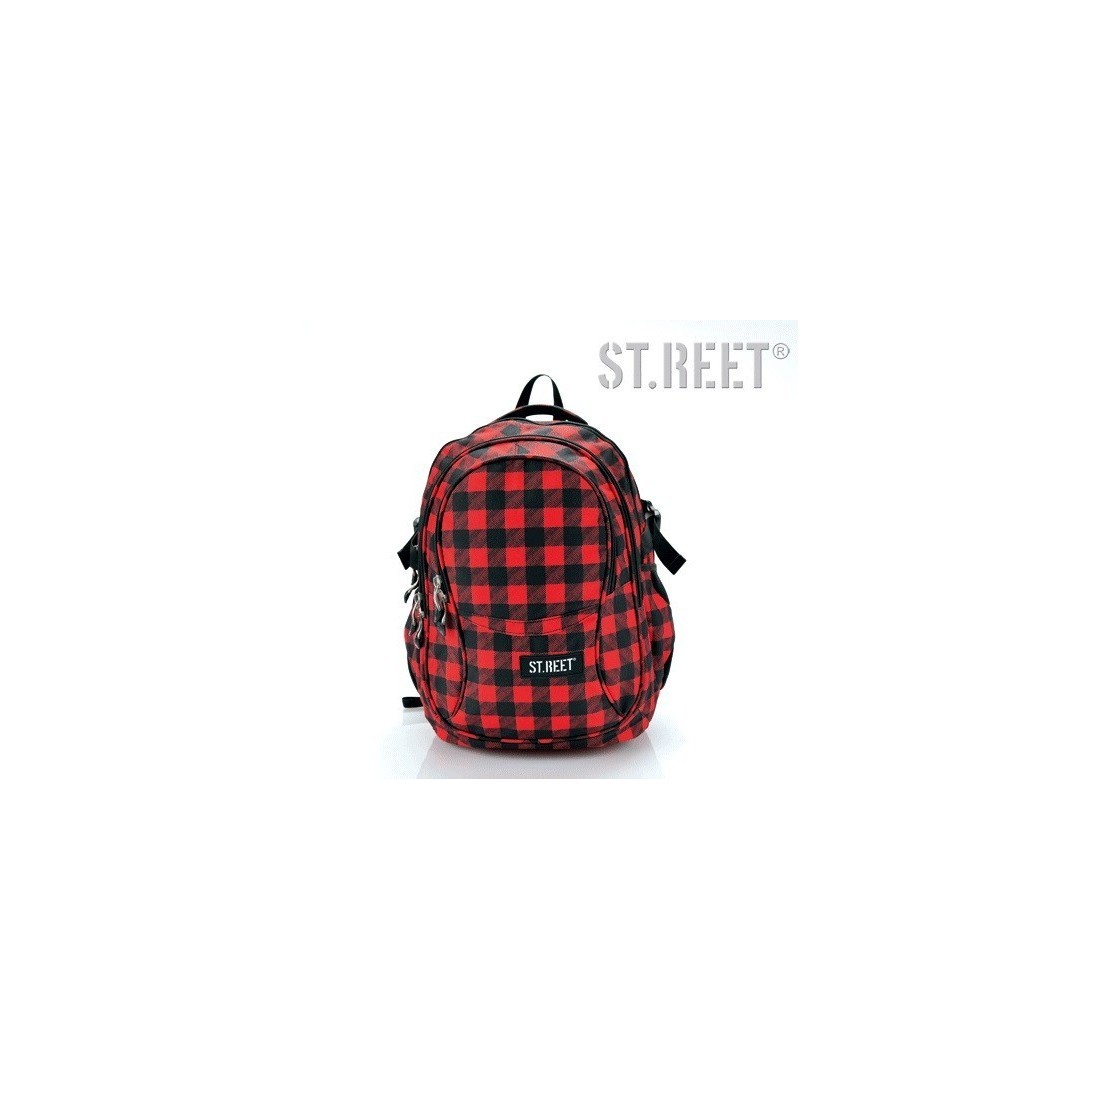 Plecak młodzieżowy 01 ST.REET czarno-czerwony w kratkę CHEQUERED 8 BLACK&RED - plecak-tornister.pl